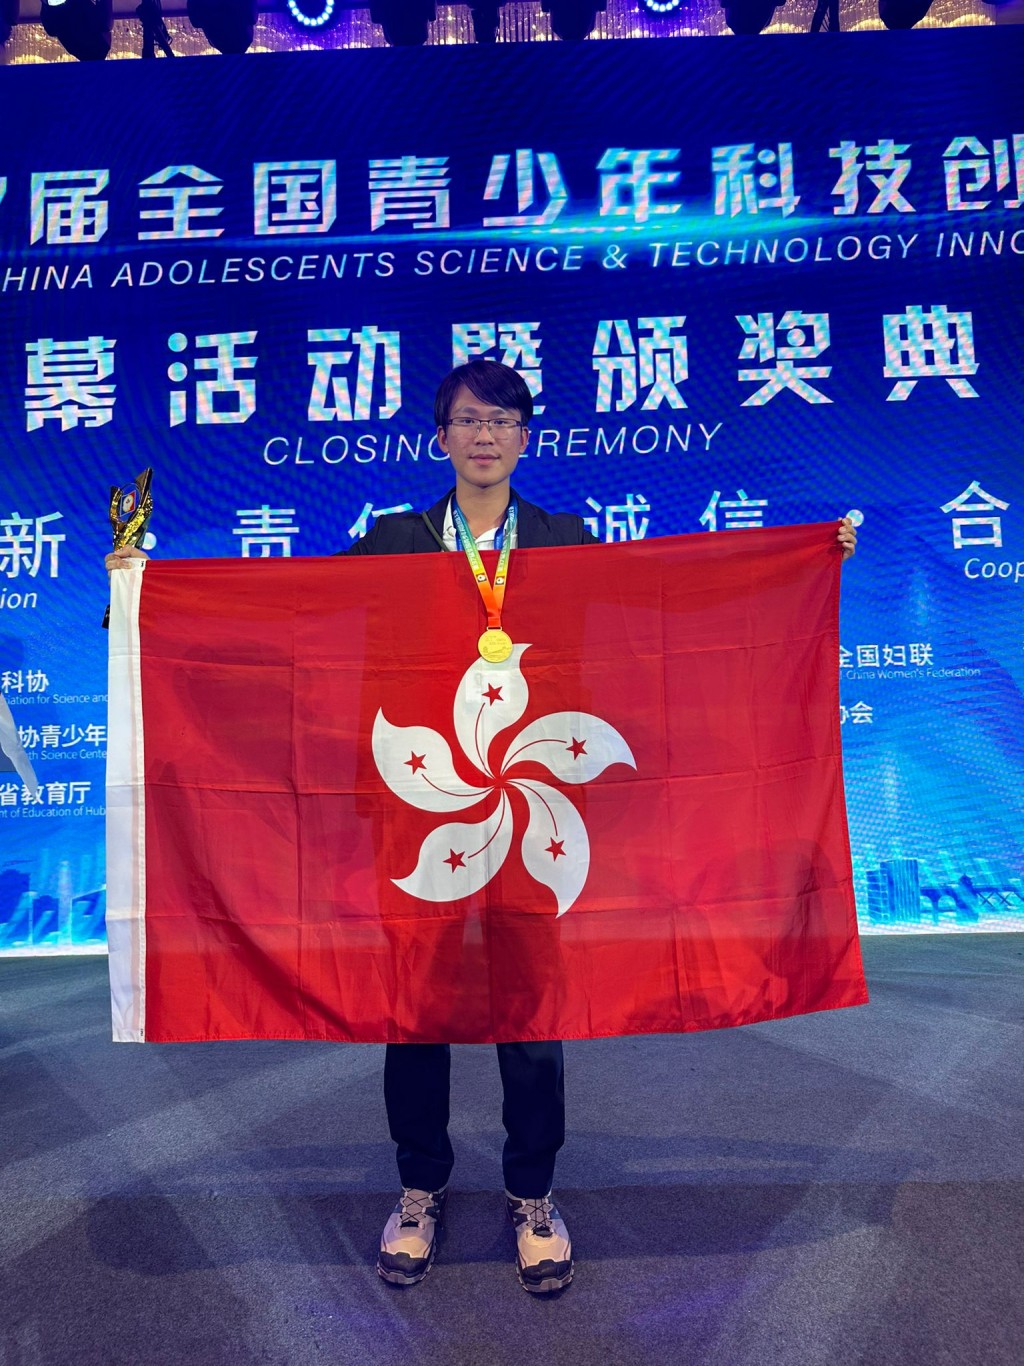 剛畢業的張兼善同學曾在「第三十七屆全國青少年科技創新大賽」獲最高殊榮 「中國科協主席獎」。